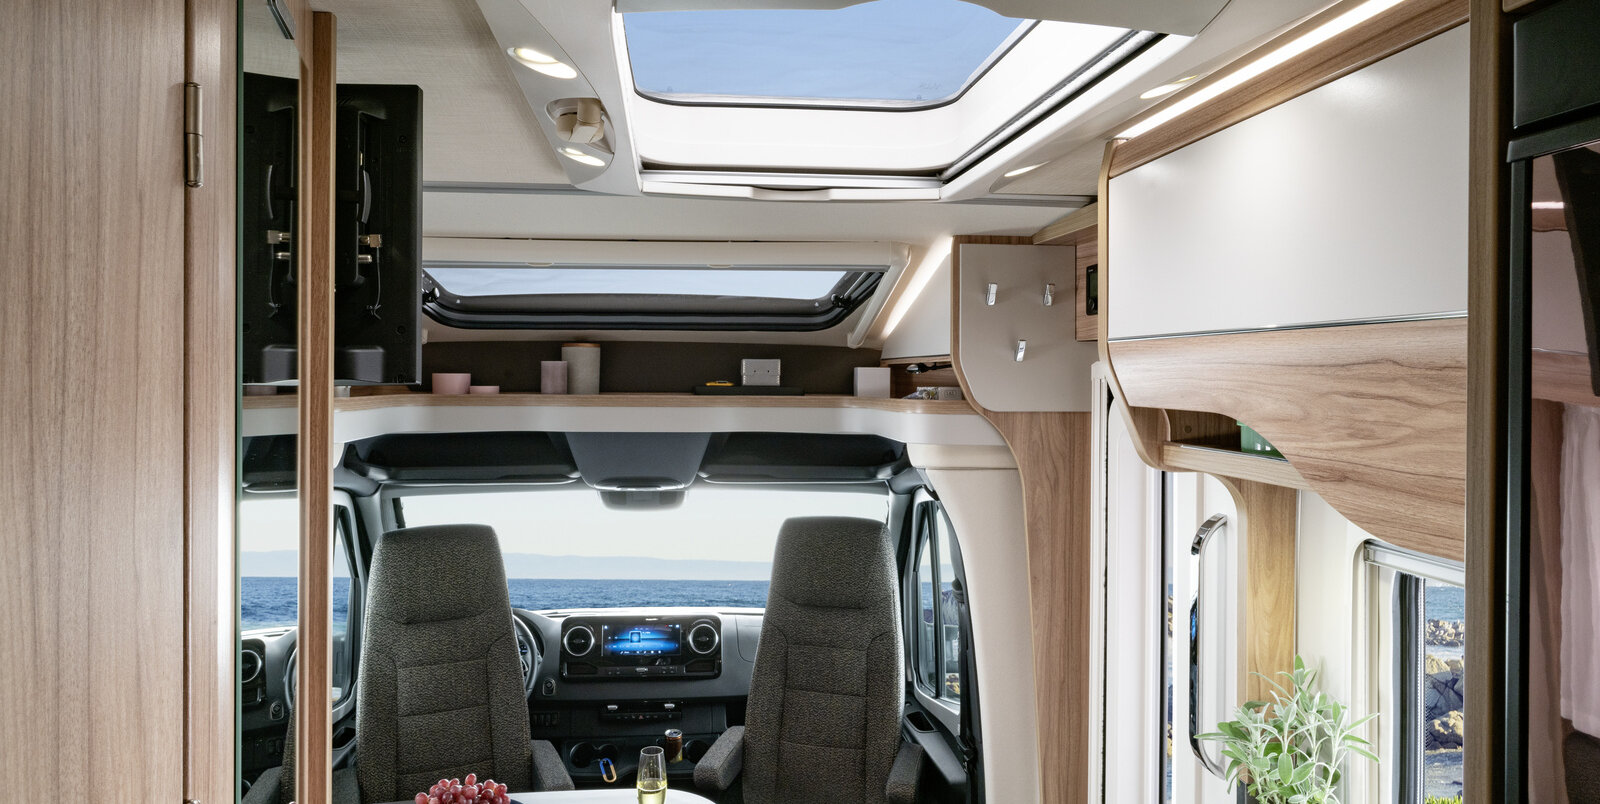 Wohnraum im HYMER ML-T:  gedeckter Tisch, Eingangstüre, Panorama-Dachlüfter, Fahrersitze, Ablageboard über Fahrersitzen